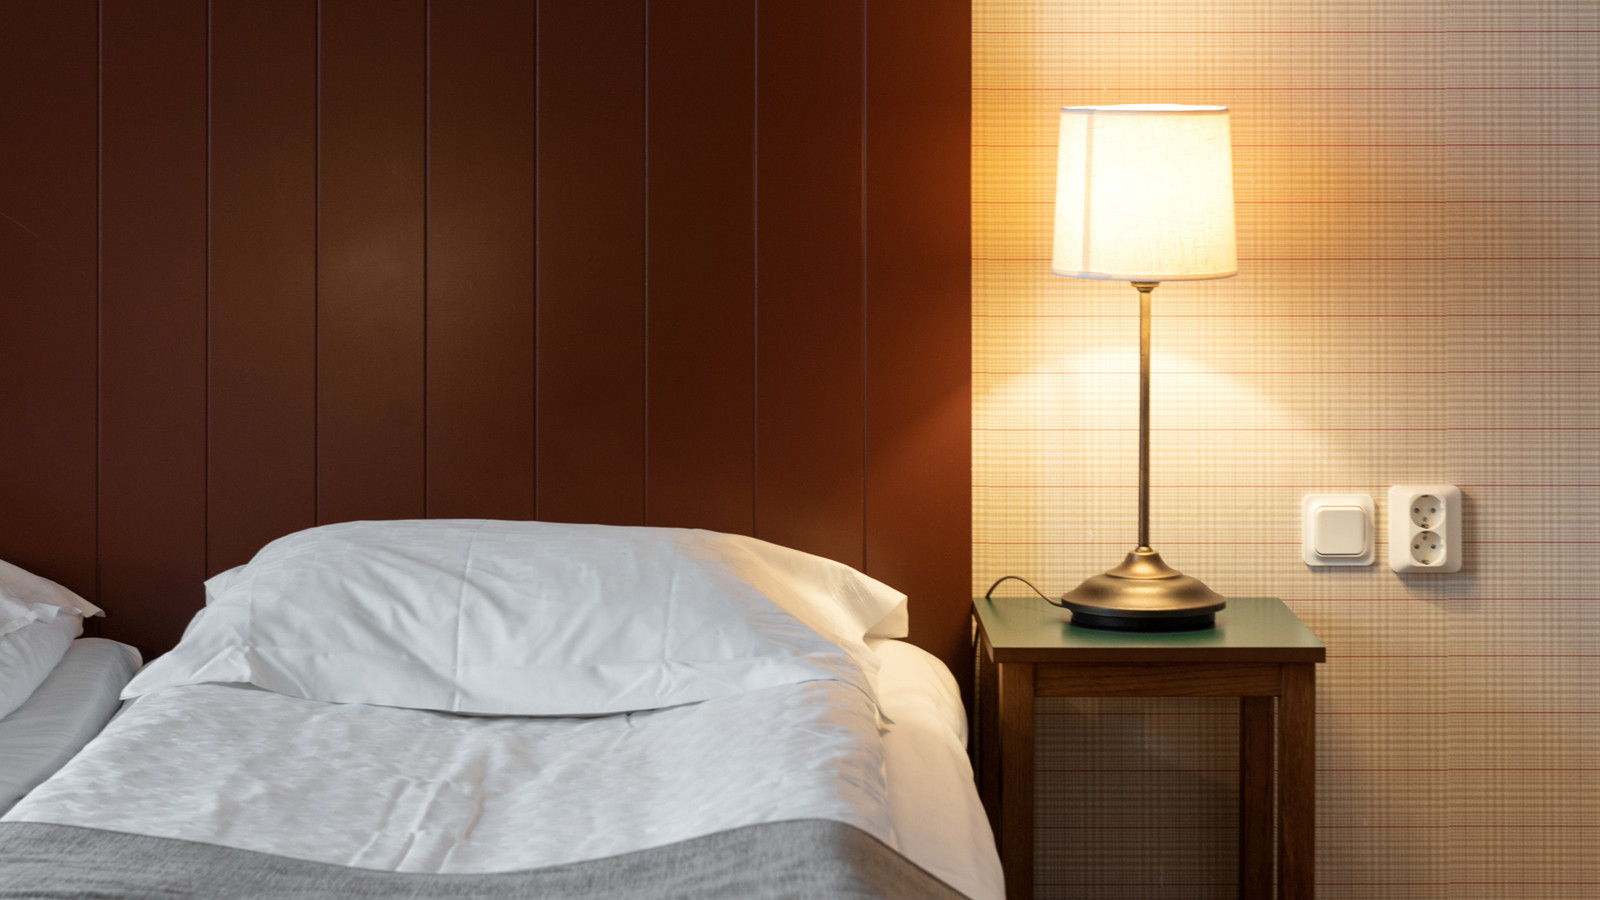 Säng i hotellrum Bishops Arms i Köping